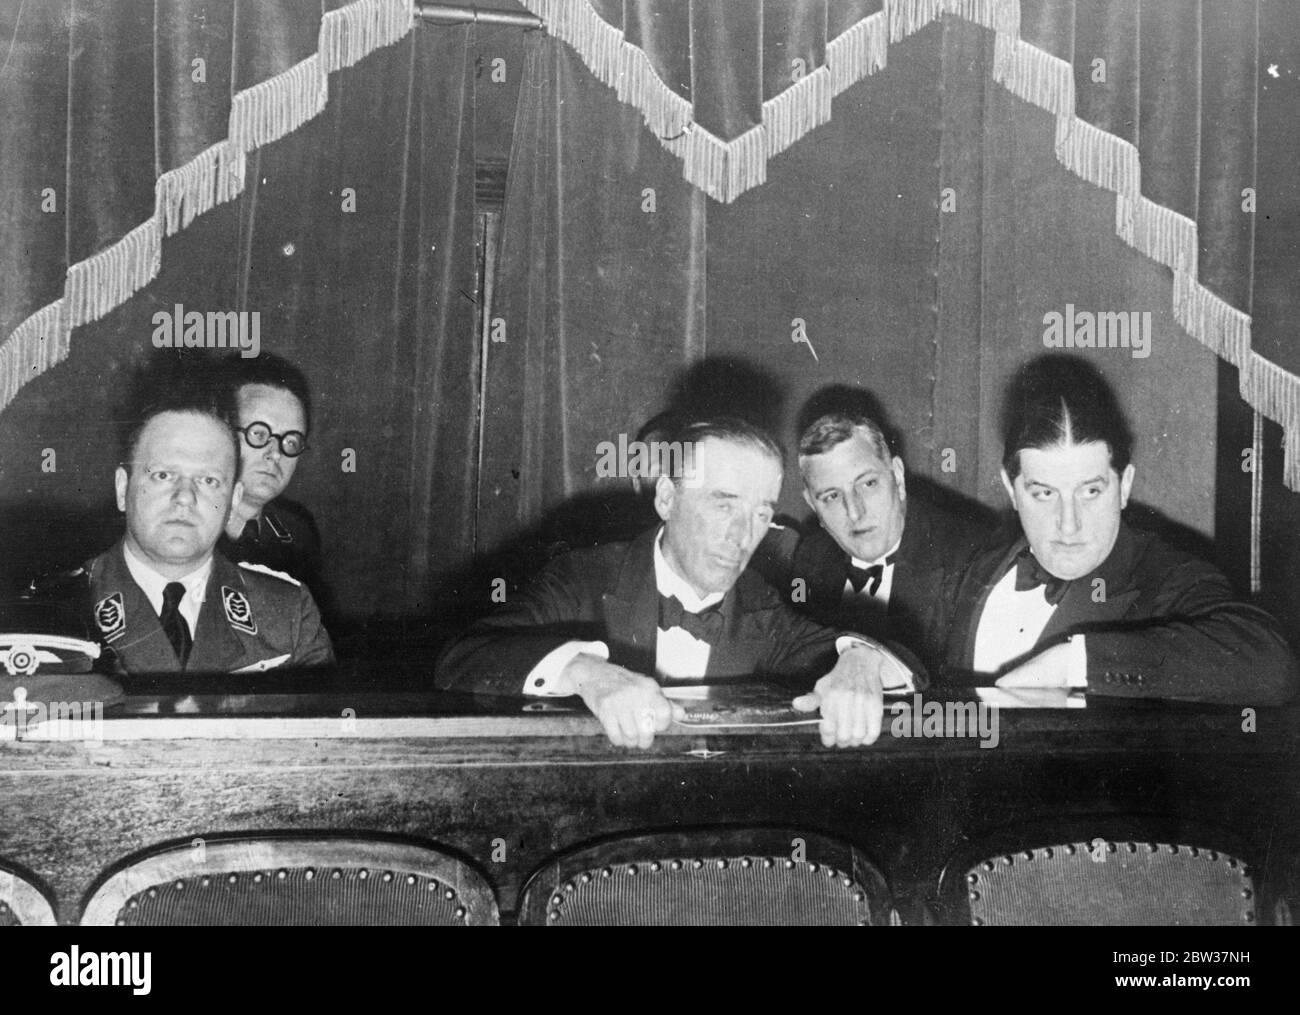 Lord Mottistone sieht Nazi-Film in Berlin. Lord Mottistone, der Berlin besucht eine Gala-Performance des Films "Hans Westmar, einer der vielen, die sich mit der Nazi-Bewegung. Lord Mottistone wurde von Herrn Milch, Chef des deutschen Luftverkehrs, und Dr. Hanfstaengl, ein Mitglied der Nazi-Partei und jetzt einer der chirf Leutenants Hitlers begleitet. Foto zeigt, von links nach rechts, Herr Milch, Lord Mottistone und Dr. Hanfstaengl. 11. Januar 1934 Stockfoto